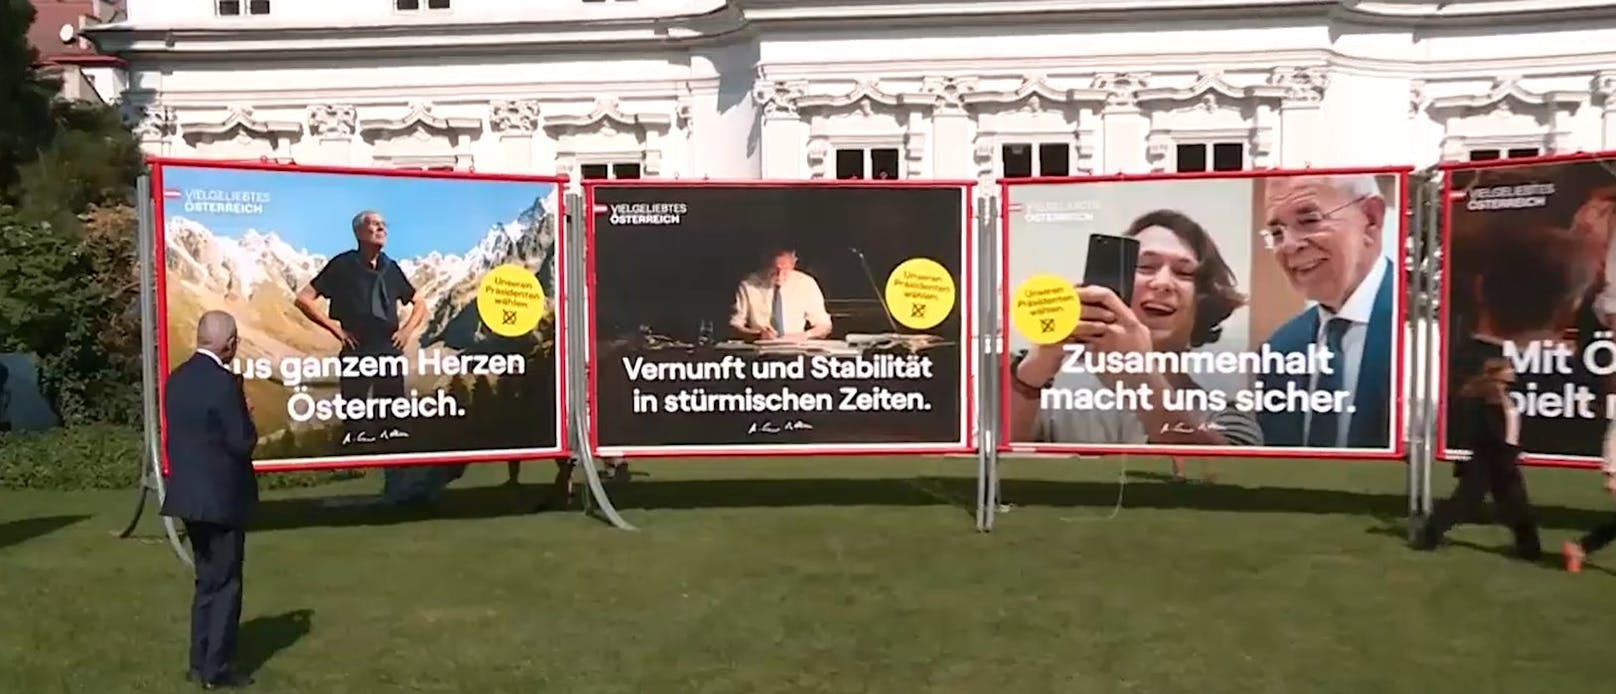 Alexander Van der Bellen präsentierte am Dienstag seine Wahlplakate für die bevorstehende Bundespräsidentenwahl.